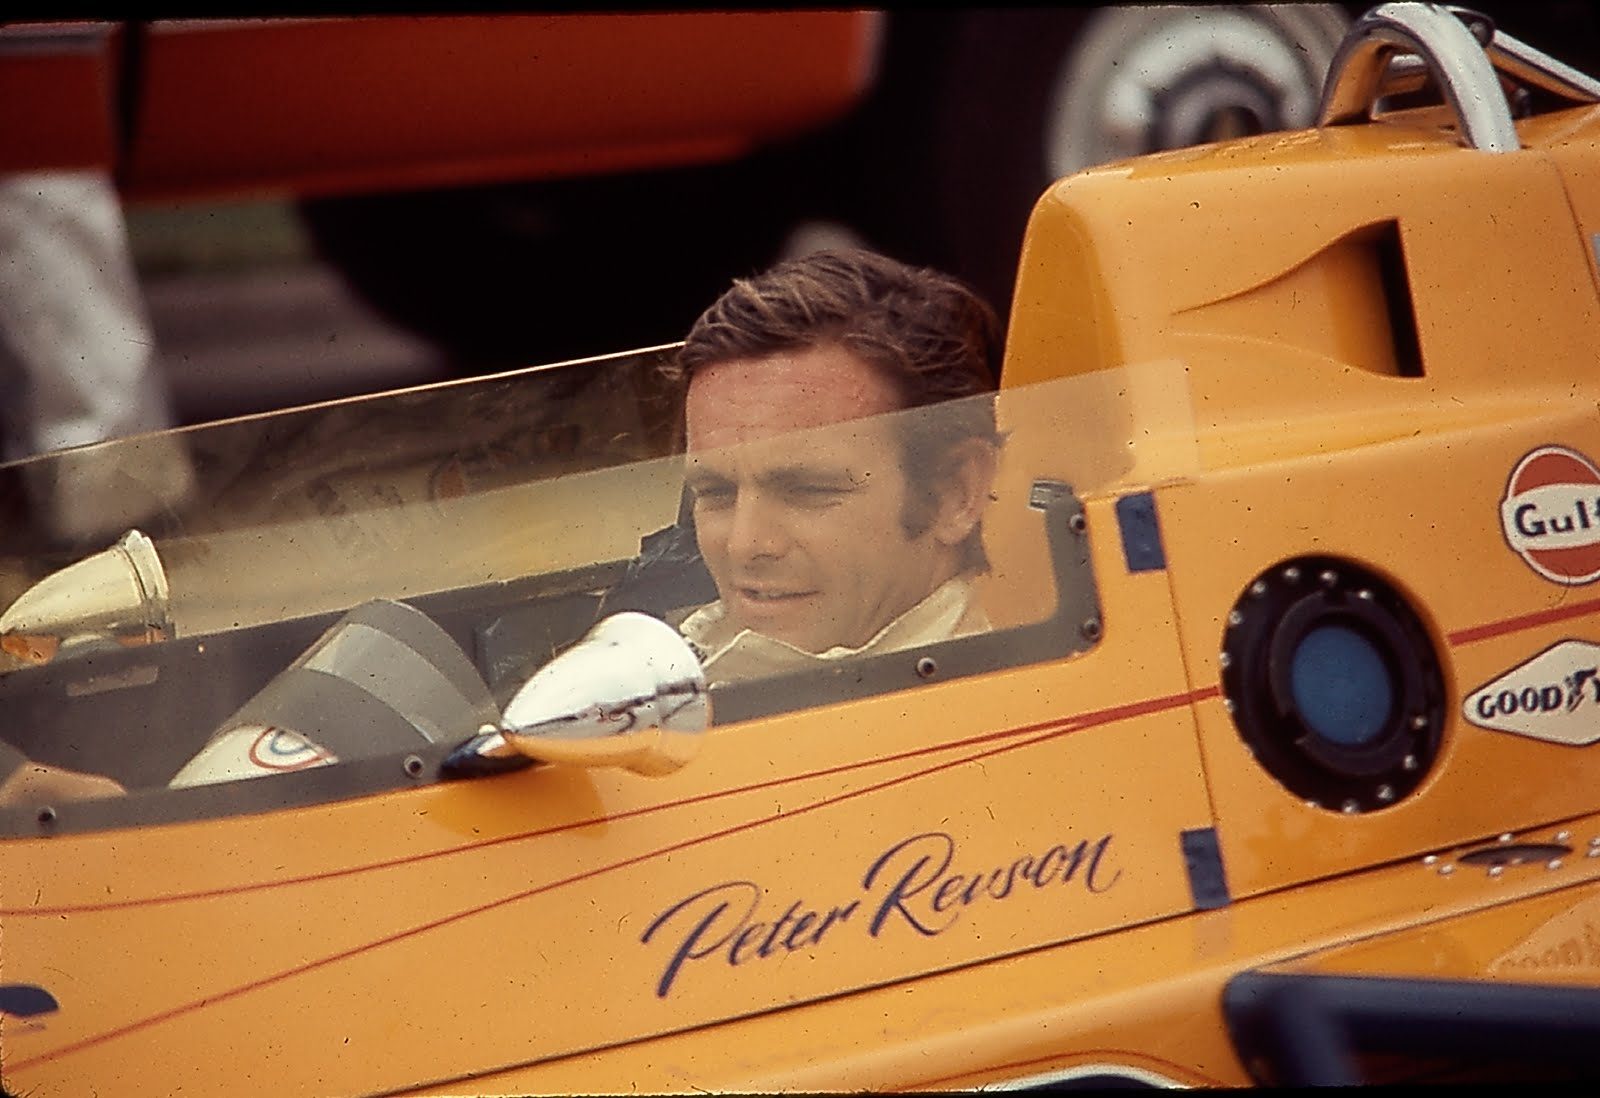 23 septembre 1973 – Peter Revson remporte le Grand Prix du Canada